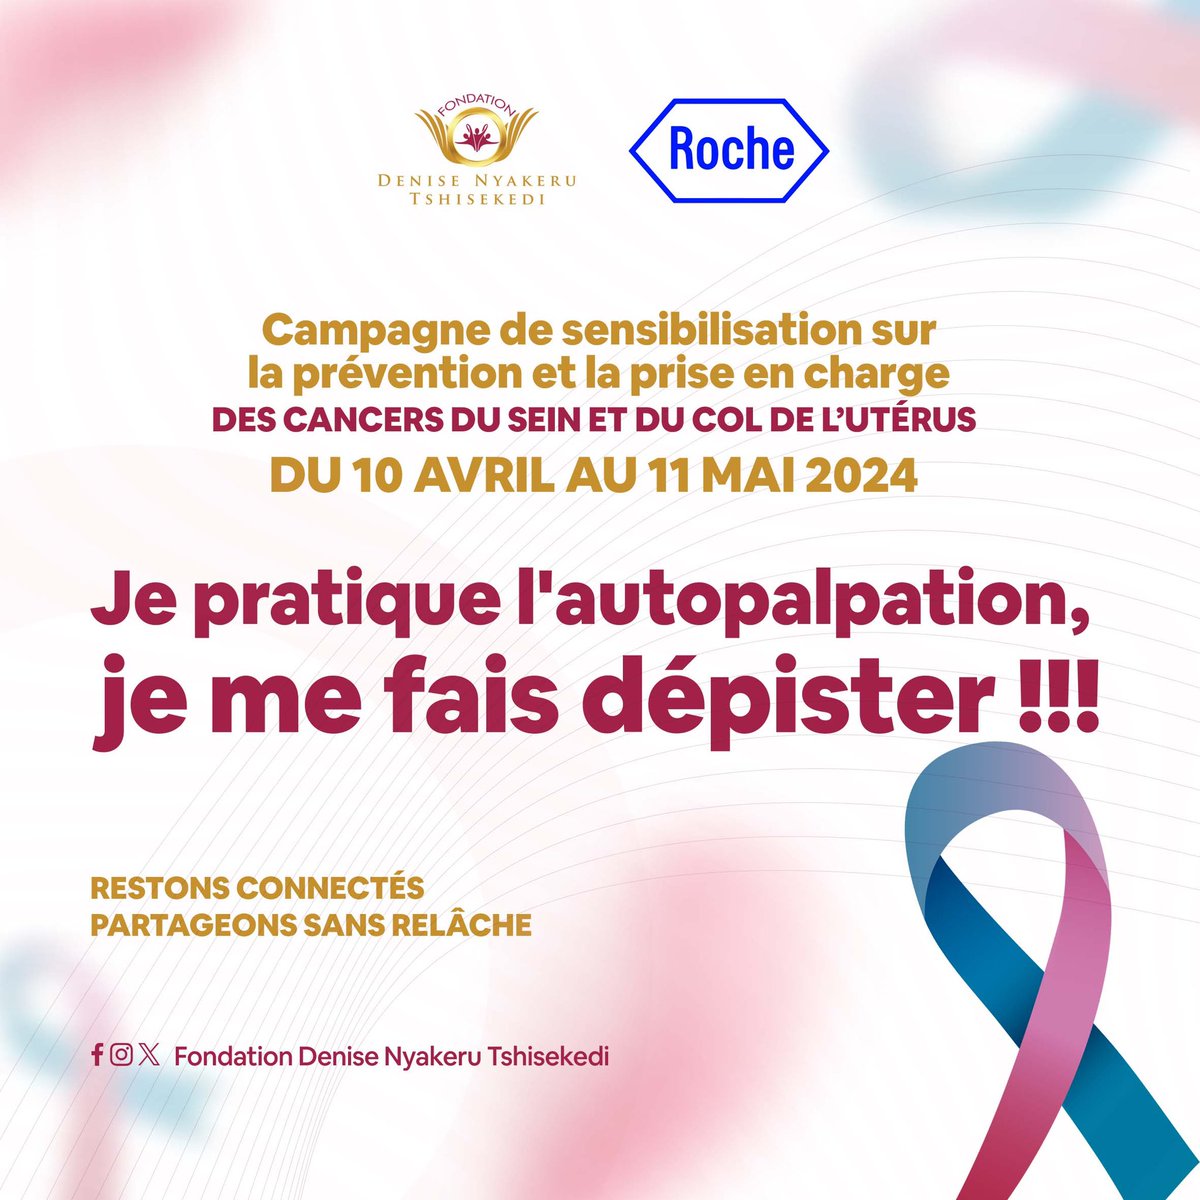 ‘’ C’est Octobre en Avril ! ‘’ La Fondation Denise Nyakeru Tshisekedi et la firme pharmaceutique Roche s’engagent dans une campagne de sensibilisation sur la prévention et la prise en charge des cancers du sein et du col de l’utérus. Ensemble, parlons et agissons pour un…